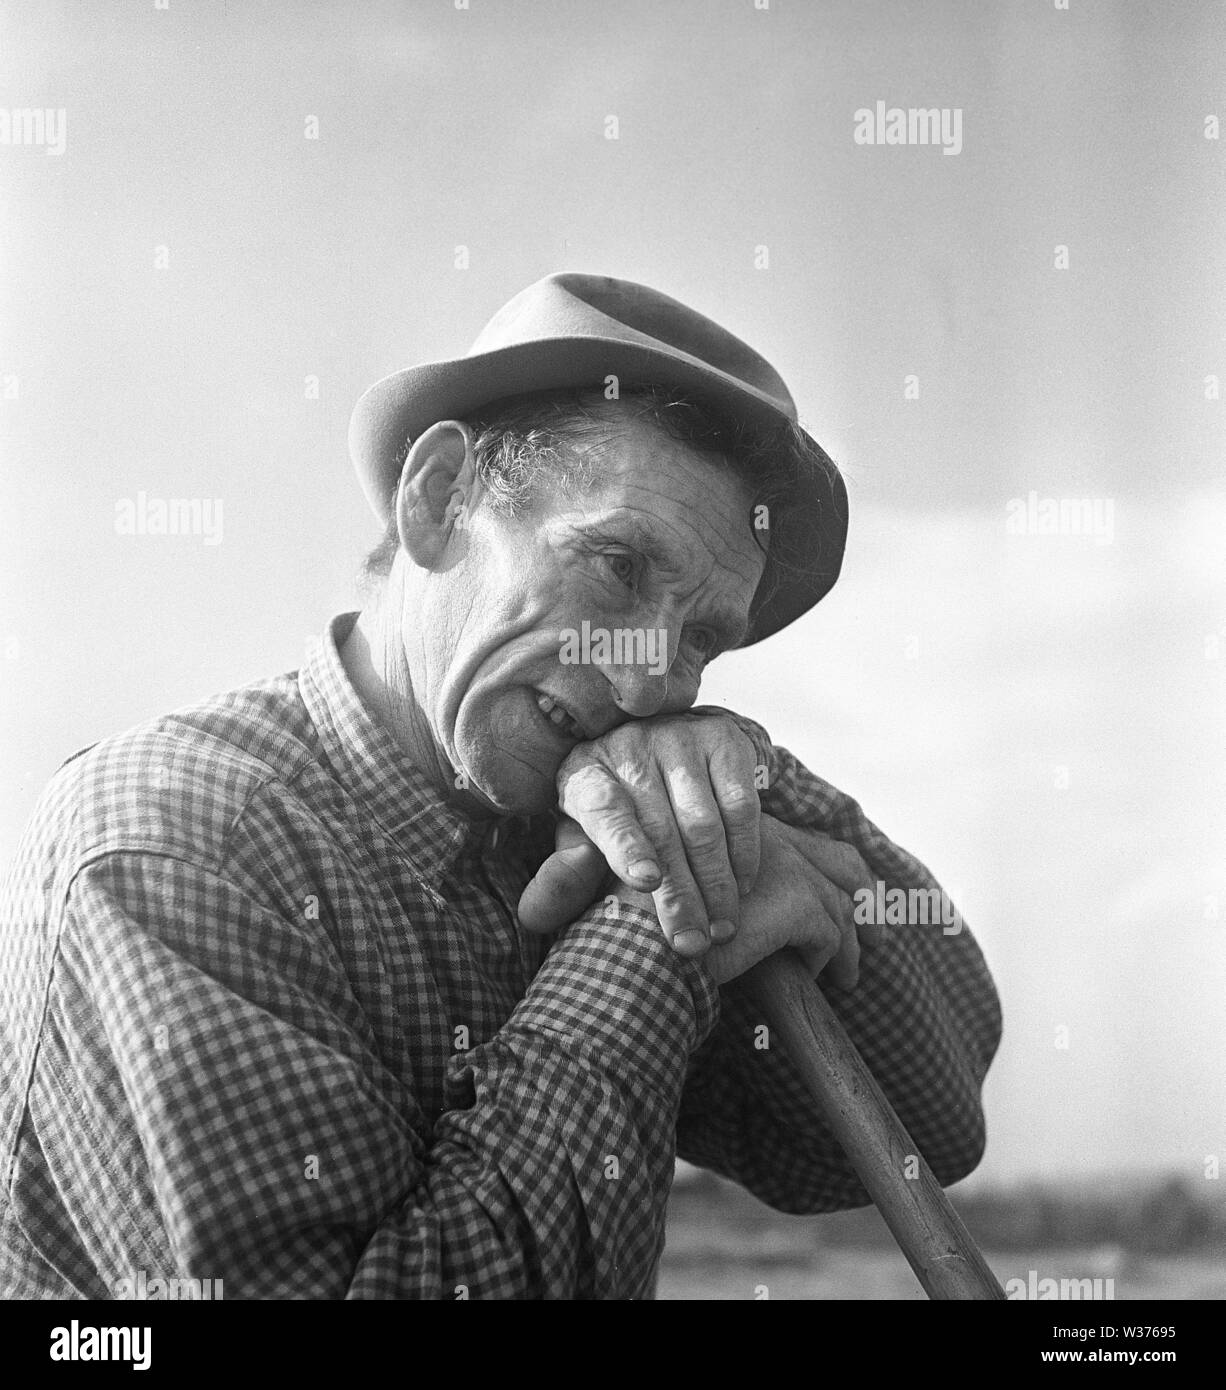 Agricoltore nel 1940s. Un uomo anziano è avere un periodo di riposo dal lavoro nei campi. La Svezia 1949. Kristoffersson ref come80-4 Foto Stock